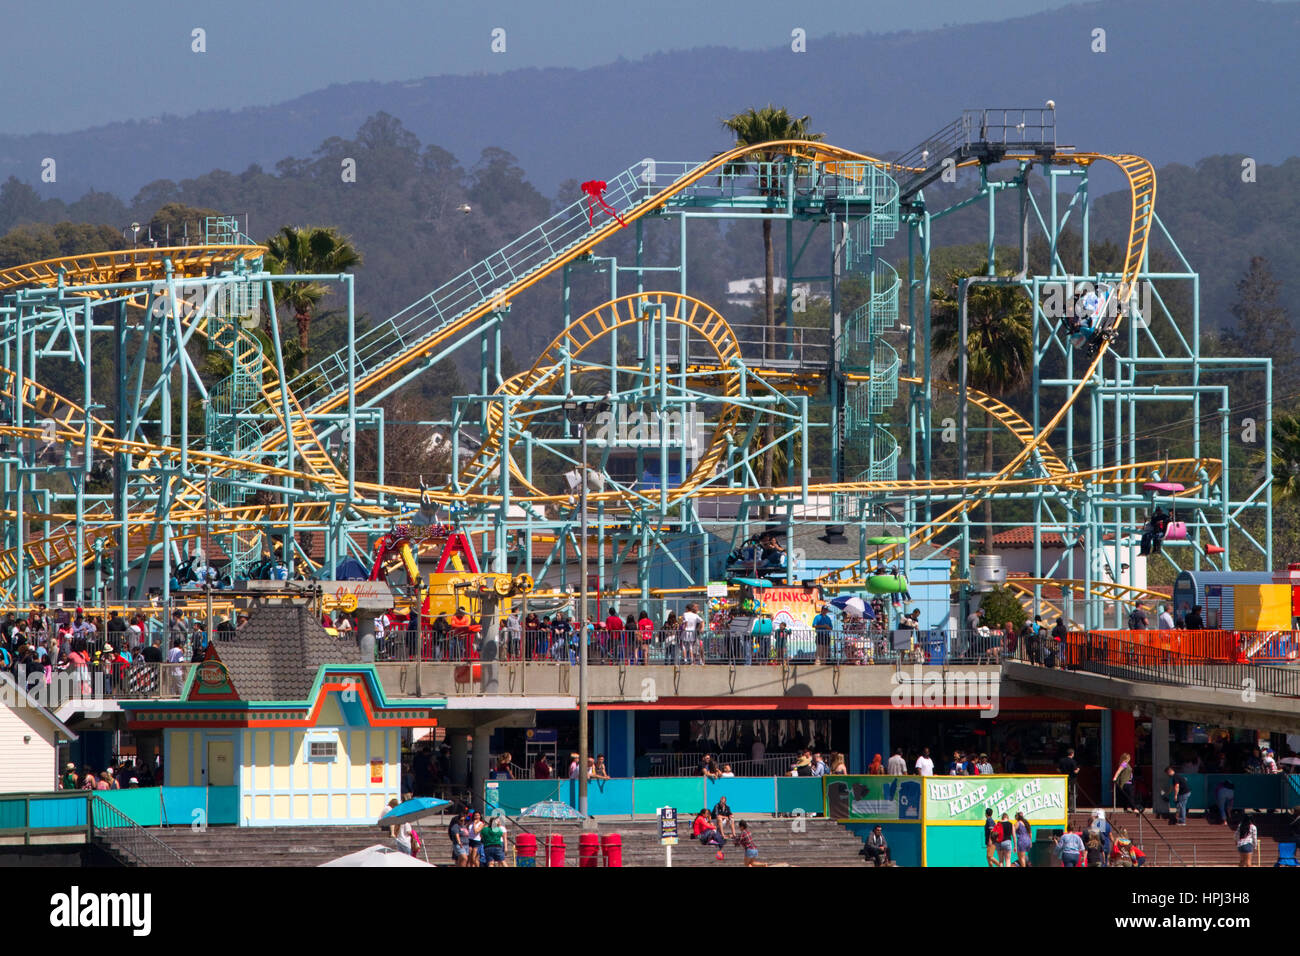 Le ressac spinning coaster en acier à rouleaux à Santa Cruz Beach Boardwalk de Santa Cruz, Californie, USA. Banque D'Images